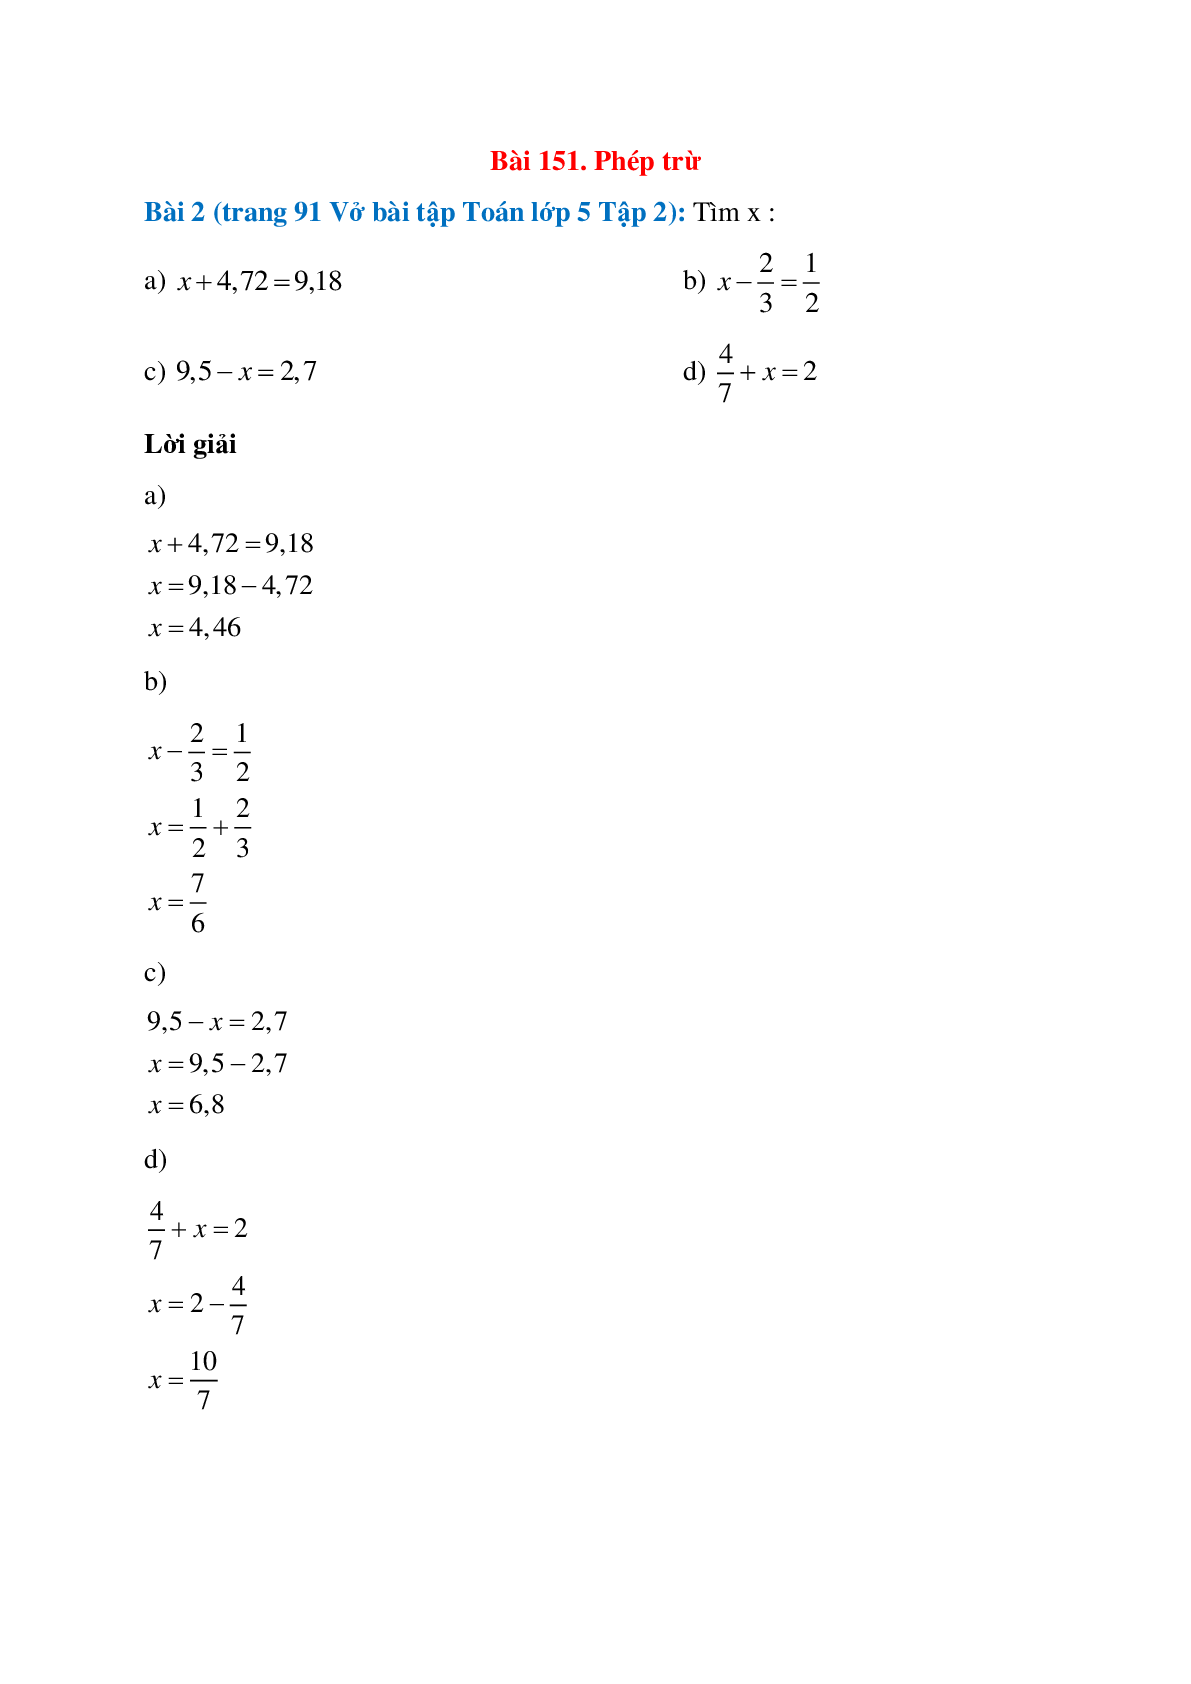 Tìm x: x+4,72 = 9,18; x-2/3 = 1/2     (trang 1)